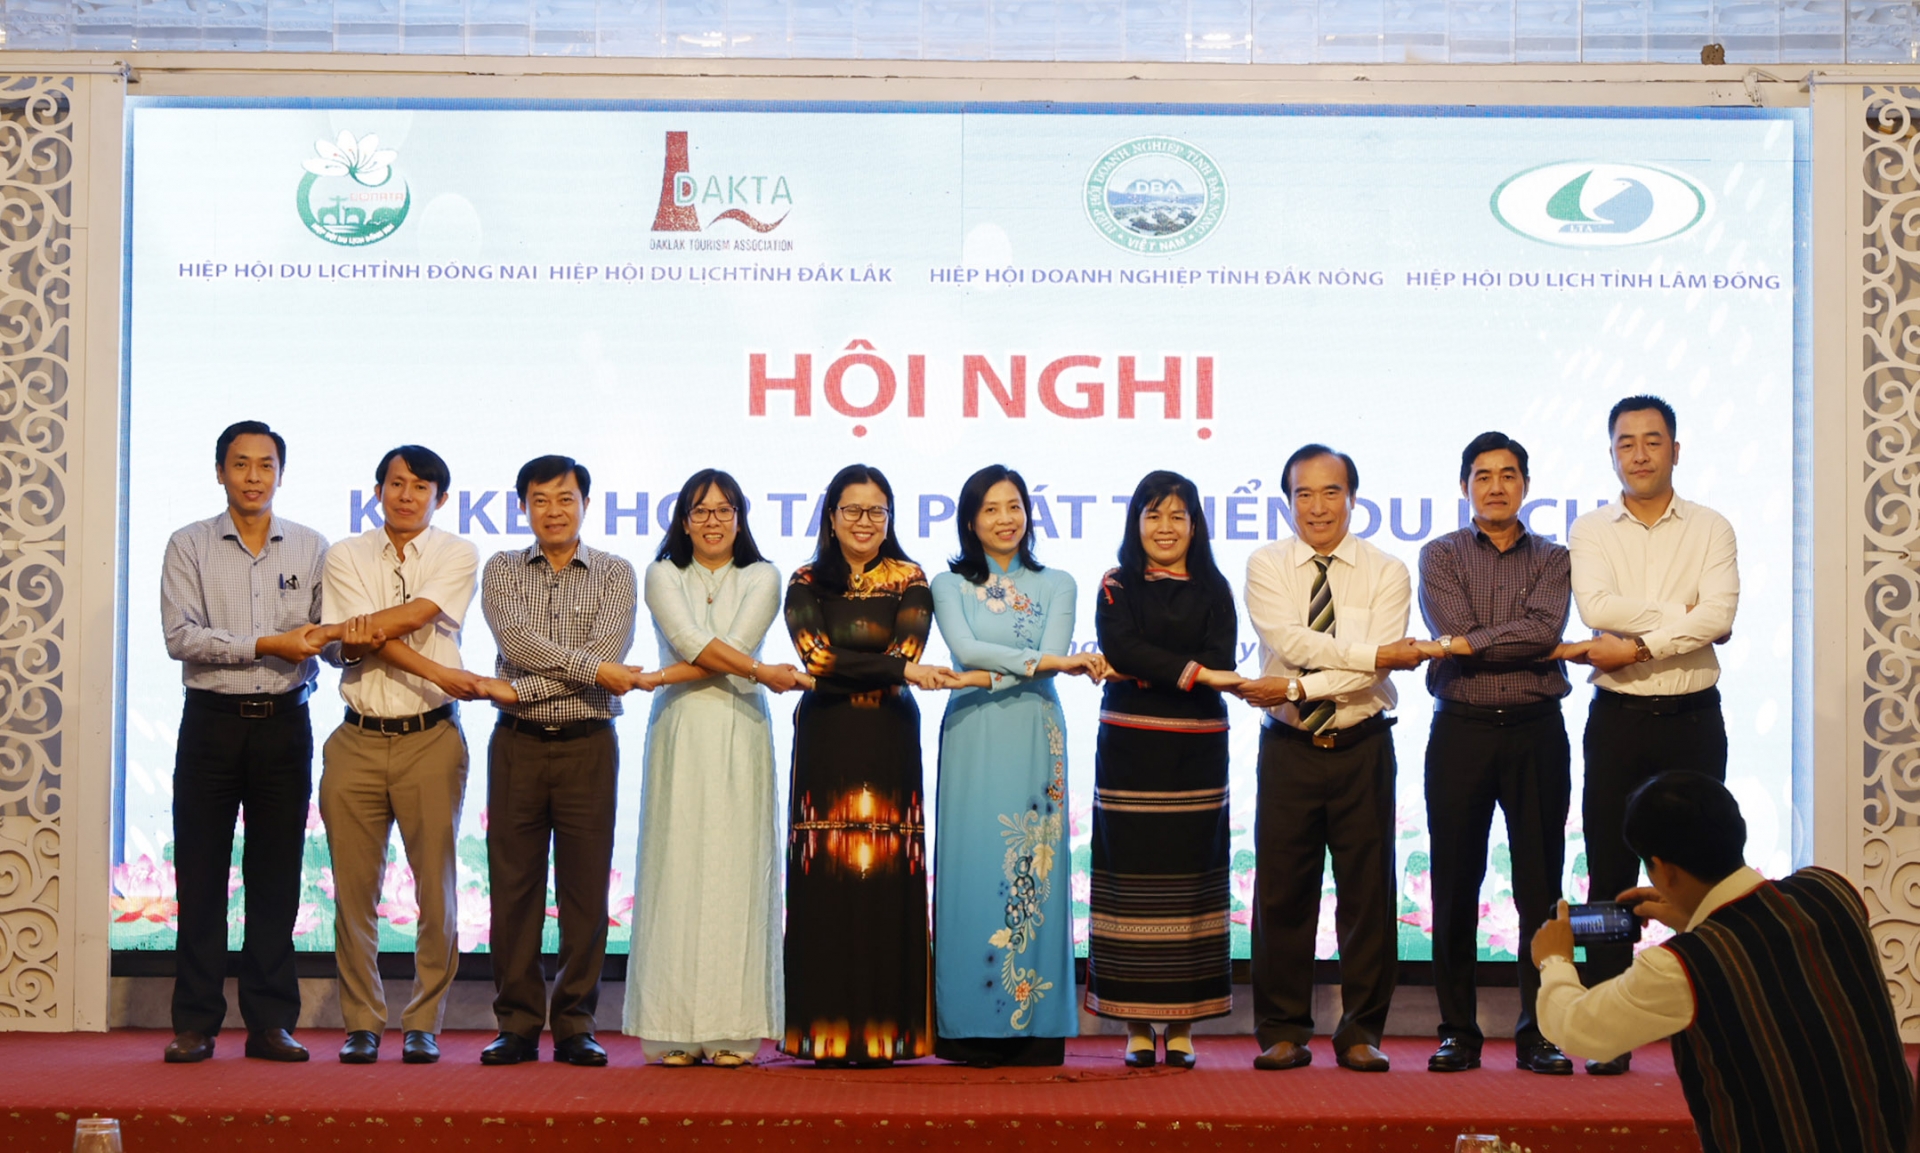 Lâm Đồng và các tỉnh Tây Nguyên ký kết hợp tác phát triển du lịch với Đồng Nai